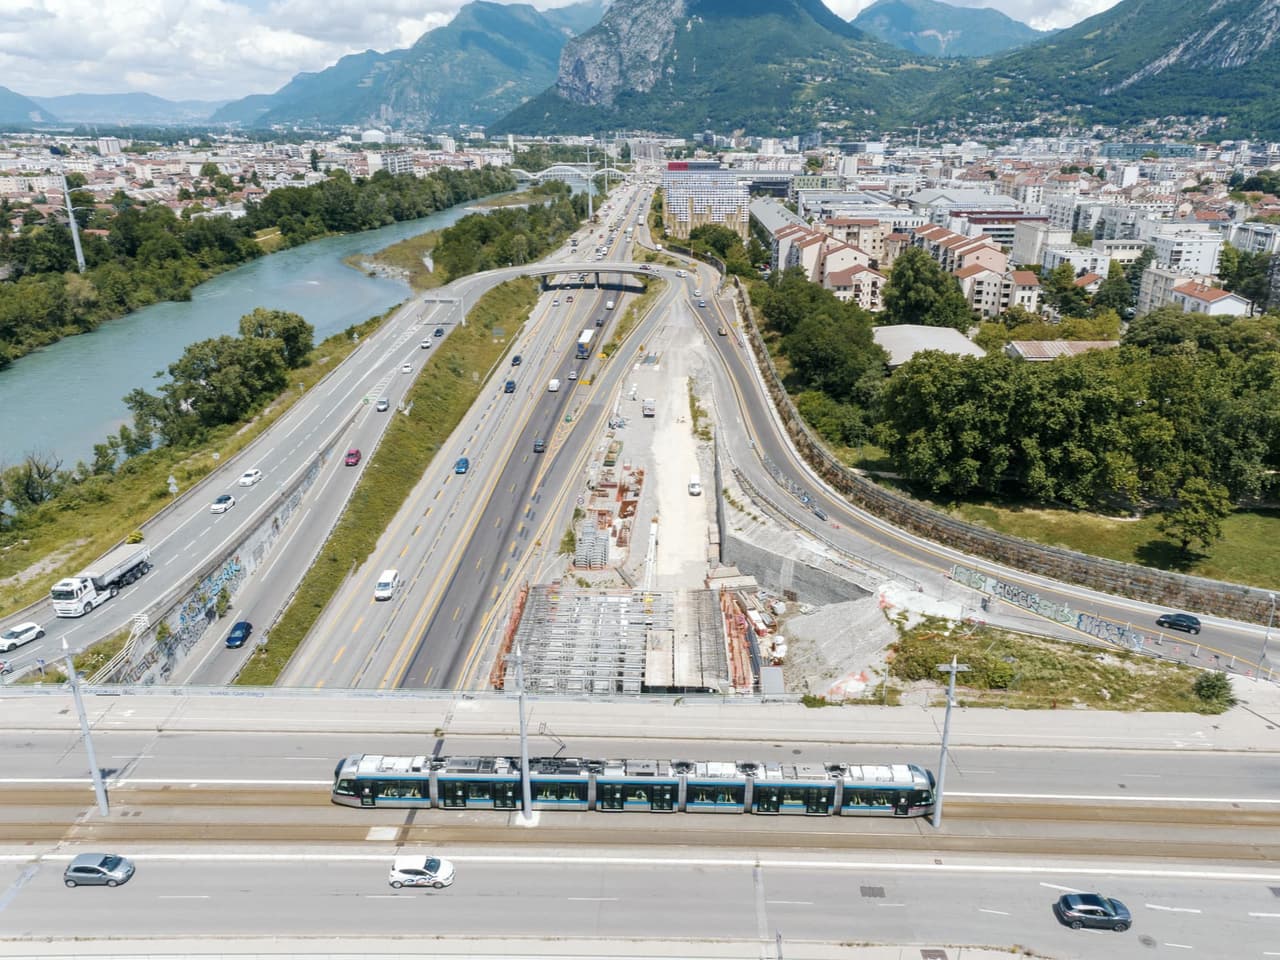 A480 Rondeau, pont de Catane de la ville de Grenoble vu du ciel